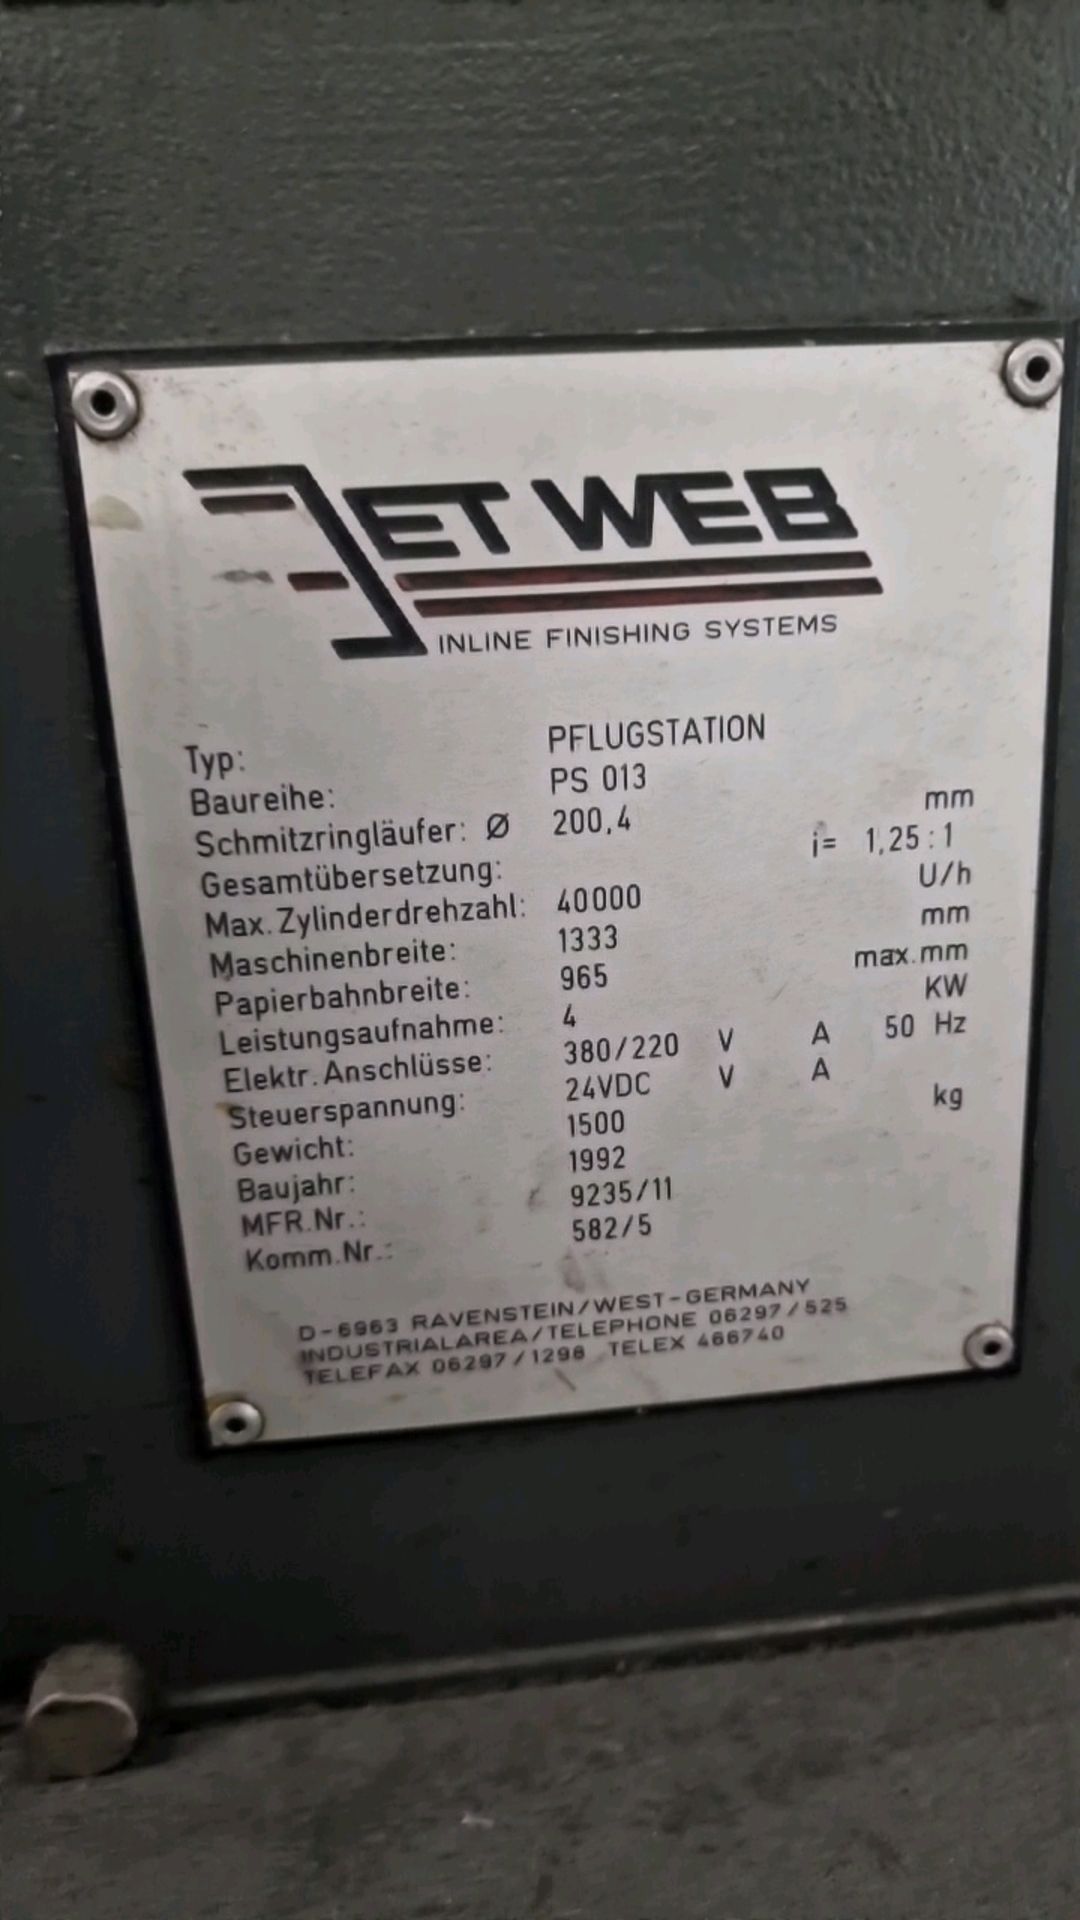 Jet Web Plow Machine - Bild 4 aus 8